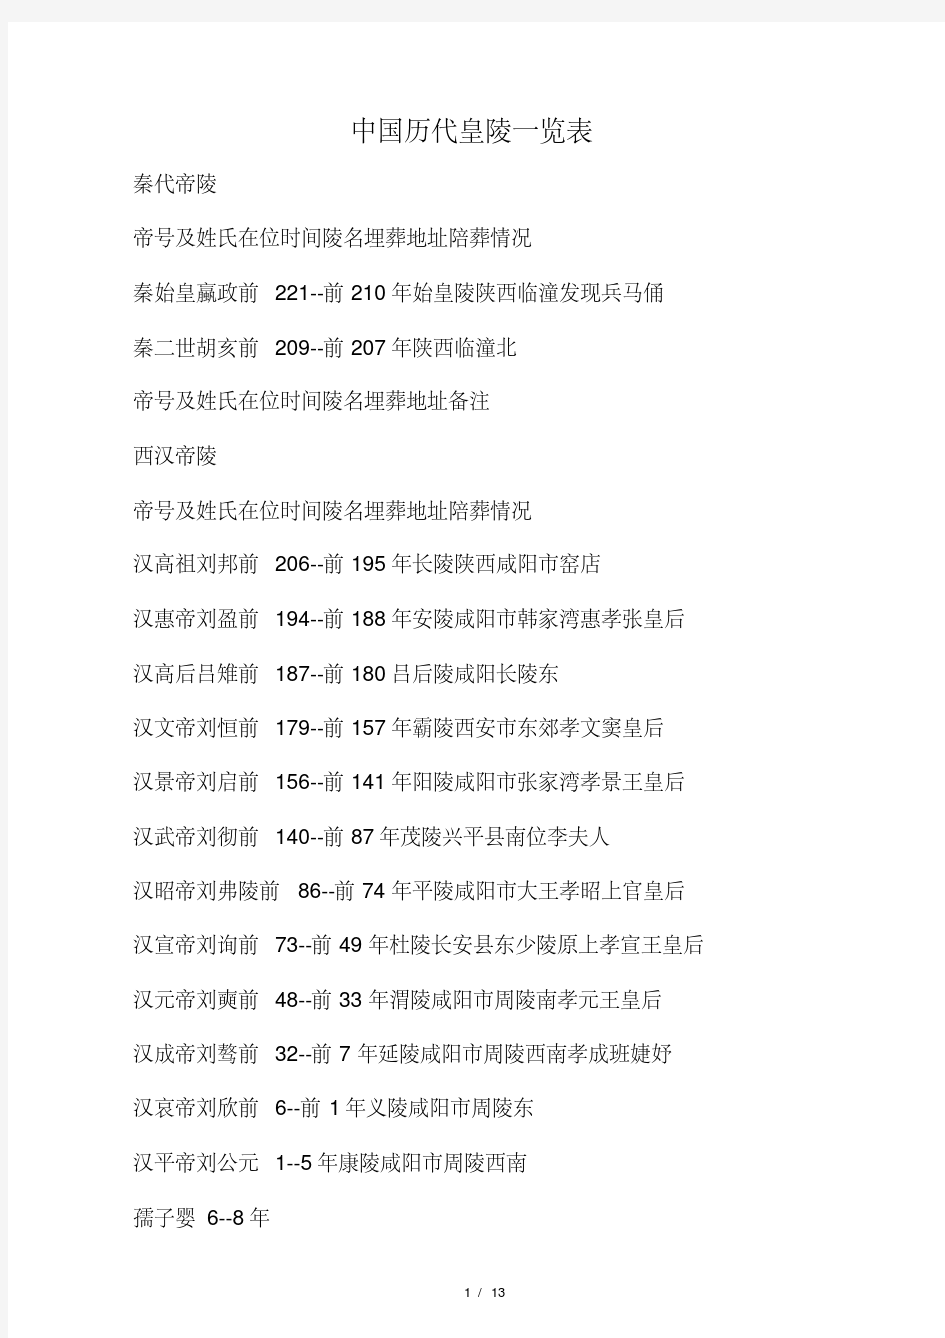 中国历代皇陵一览表.pdf